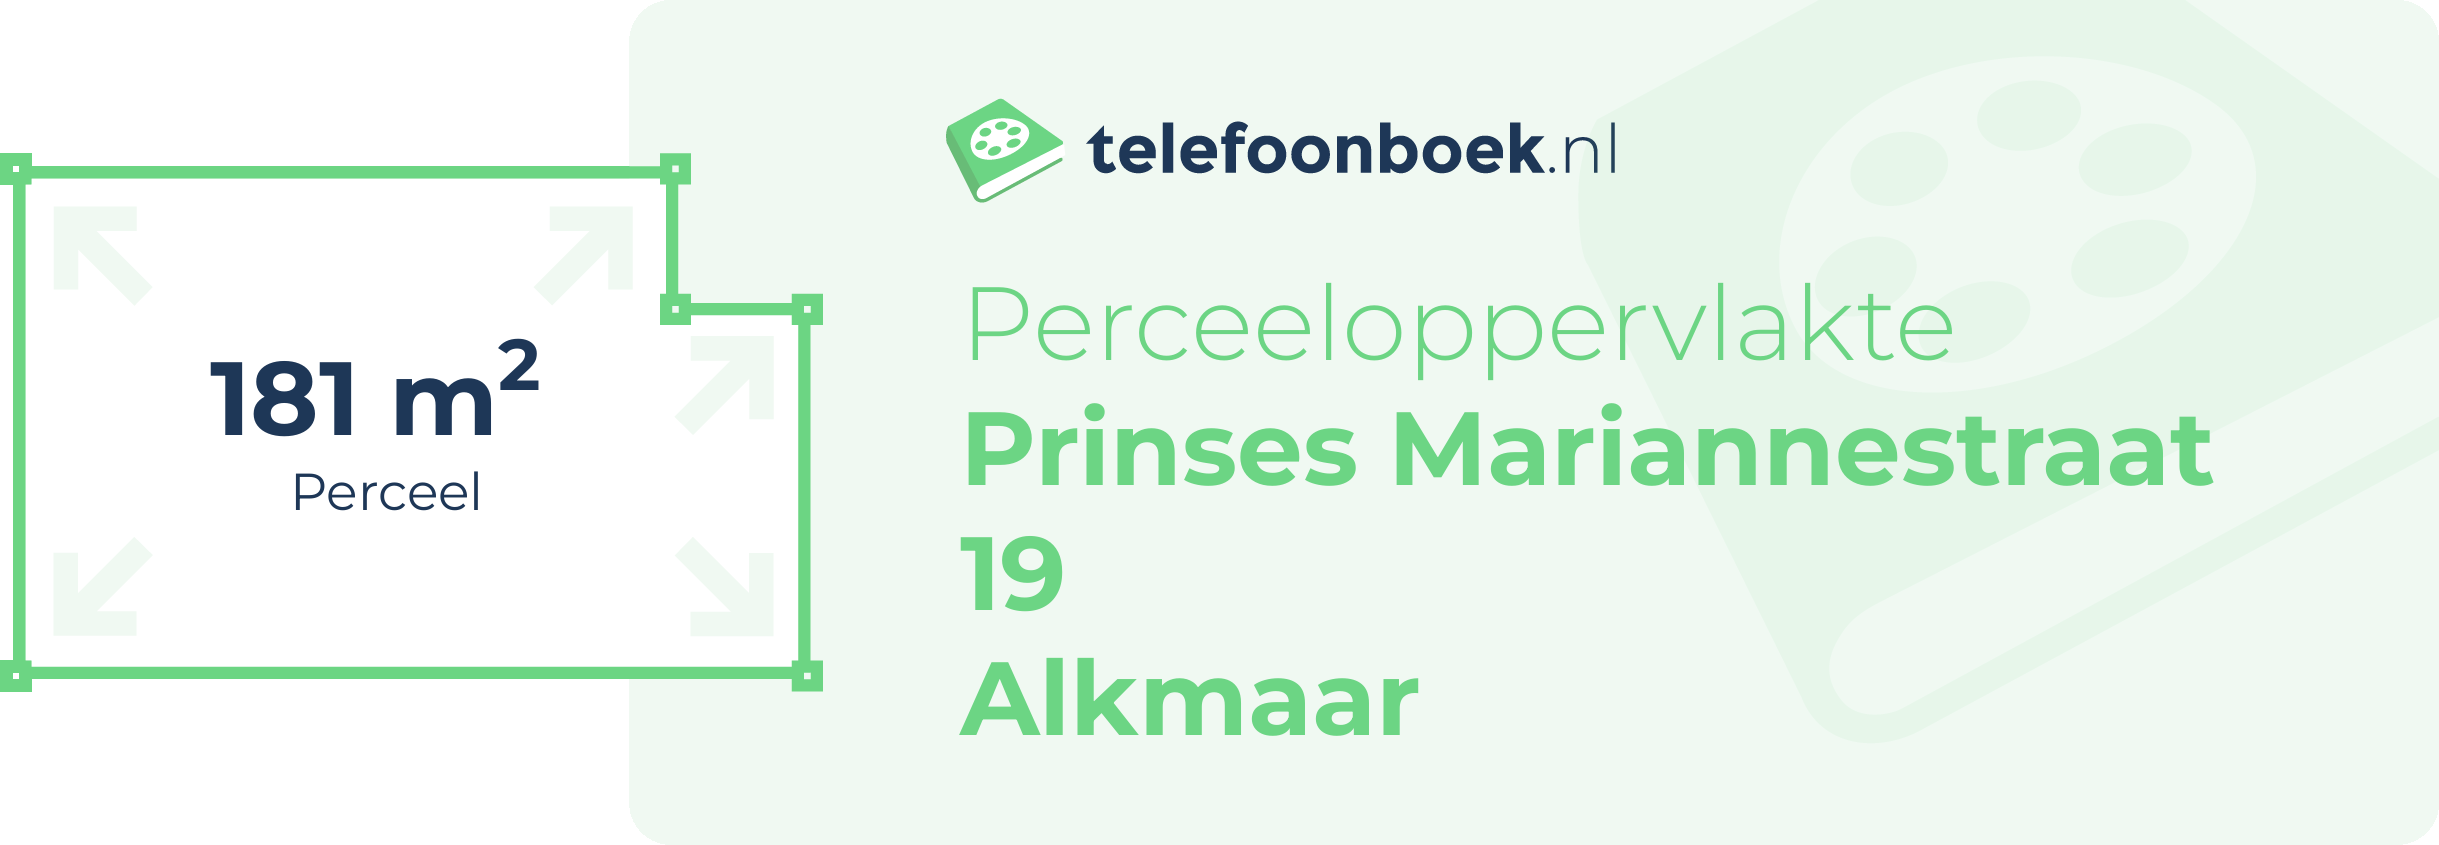 Perceeloppervlakte Prinses Mariannestraat 19 Alkmaar